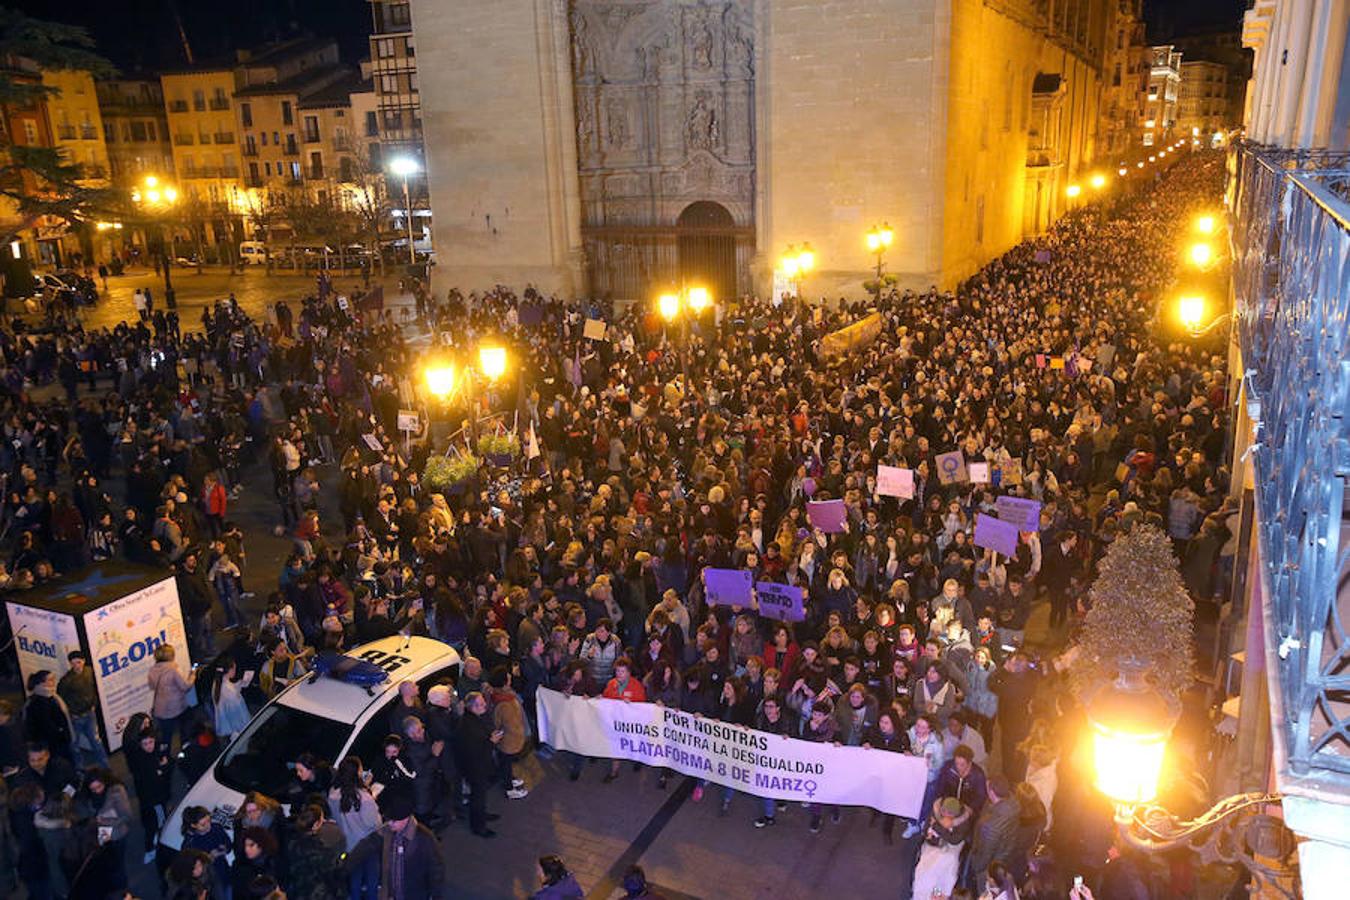 Logroño ha vivido una multitudinaria exhibición de solidaridad y respuesta contra la discriminación femenina en el Día Internacional de la Mujer. Mujeres de toda edad y condición salieron a la calle en repulsa contra cualquier tipo de exclusión por razones de sexo.